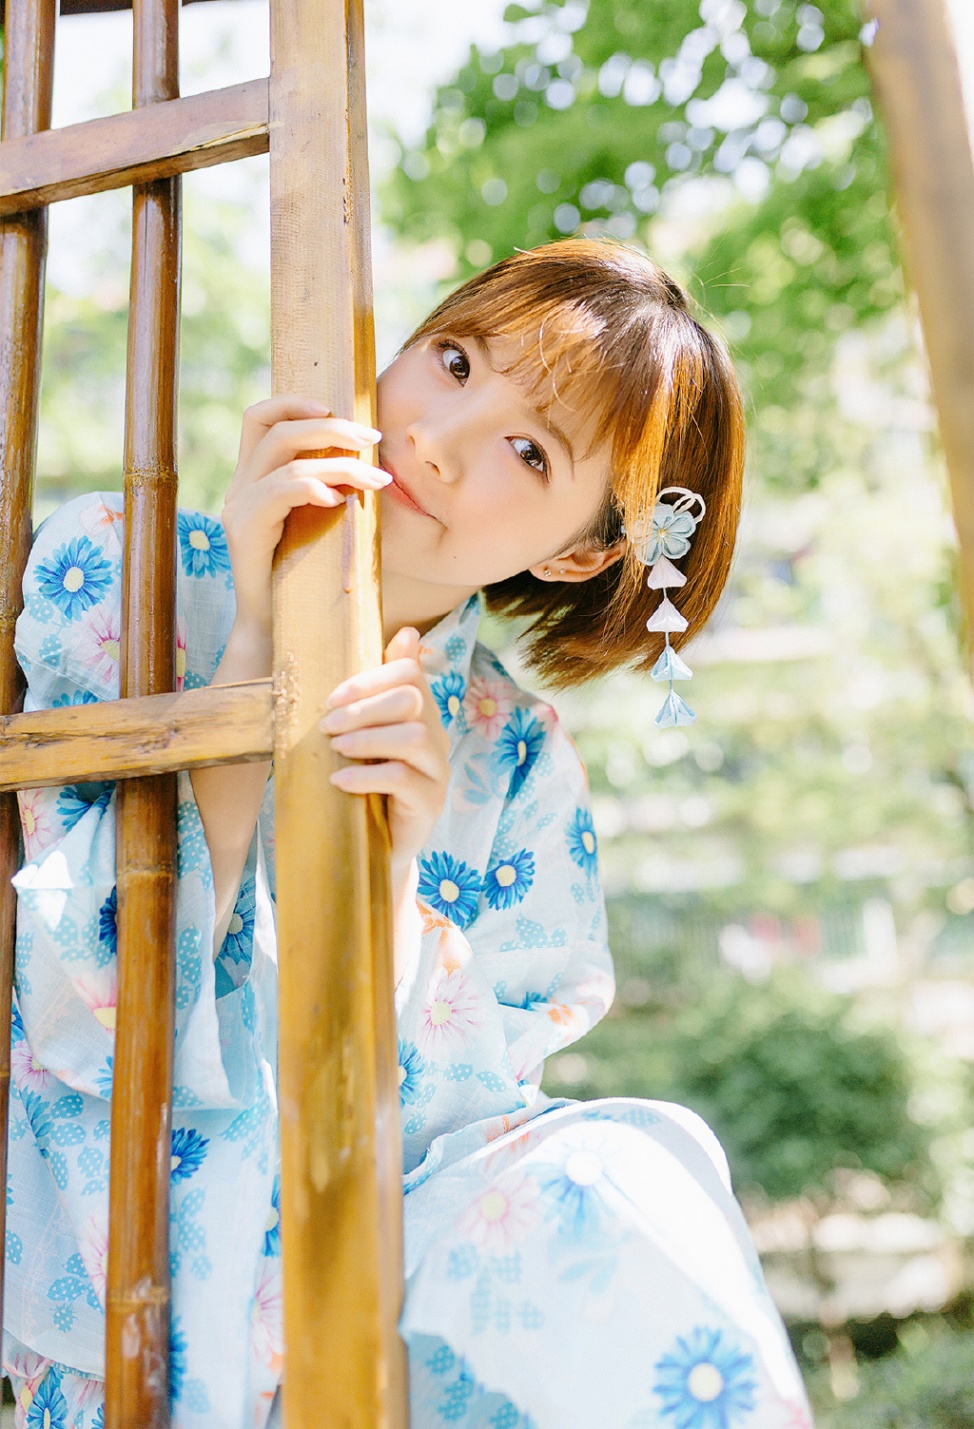 日本和服小萝莉室外白皙粉嫩肌肤撩人图片(第2页)